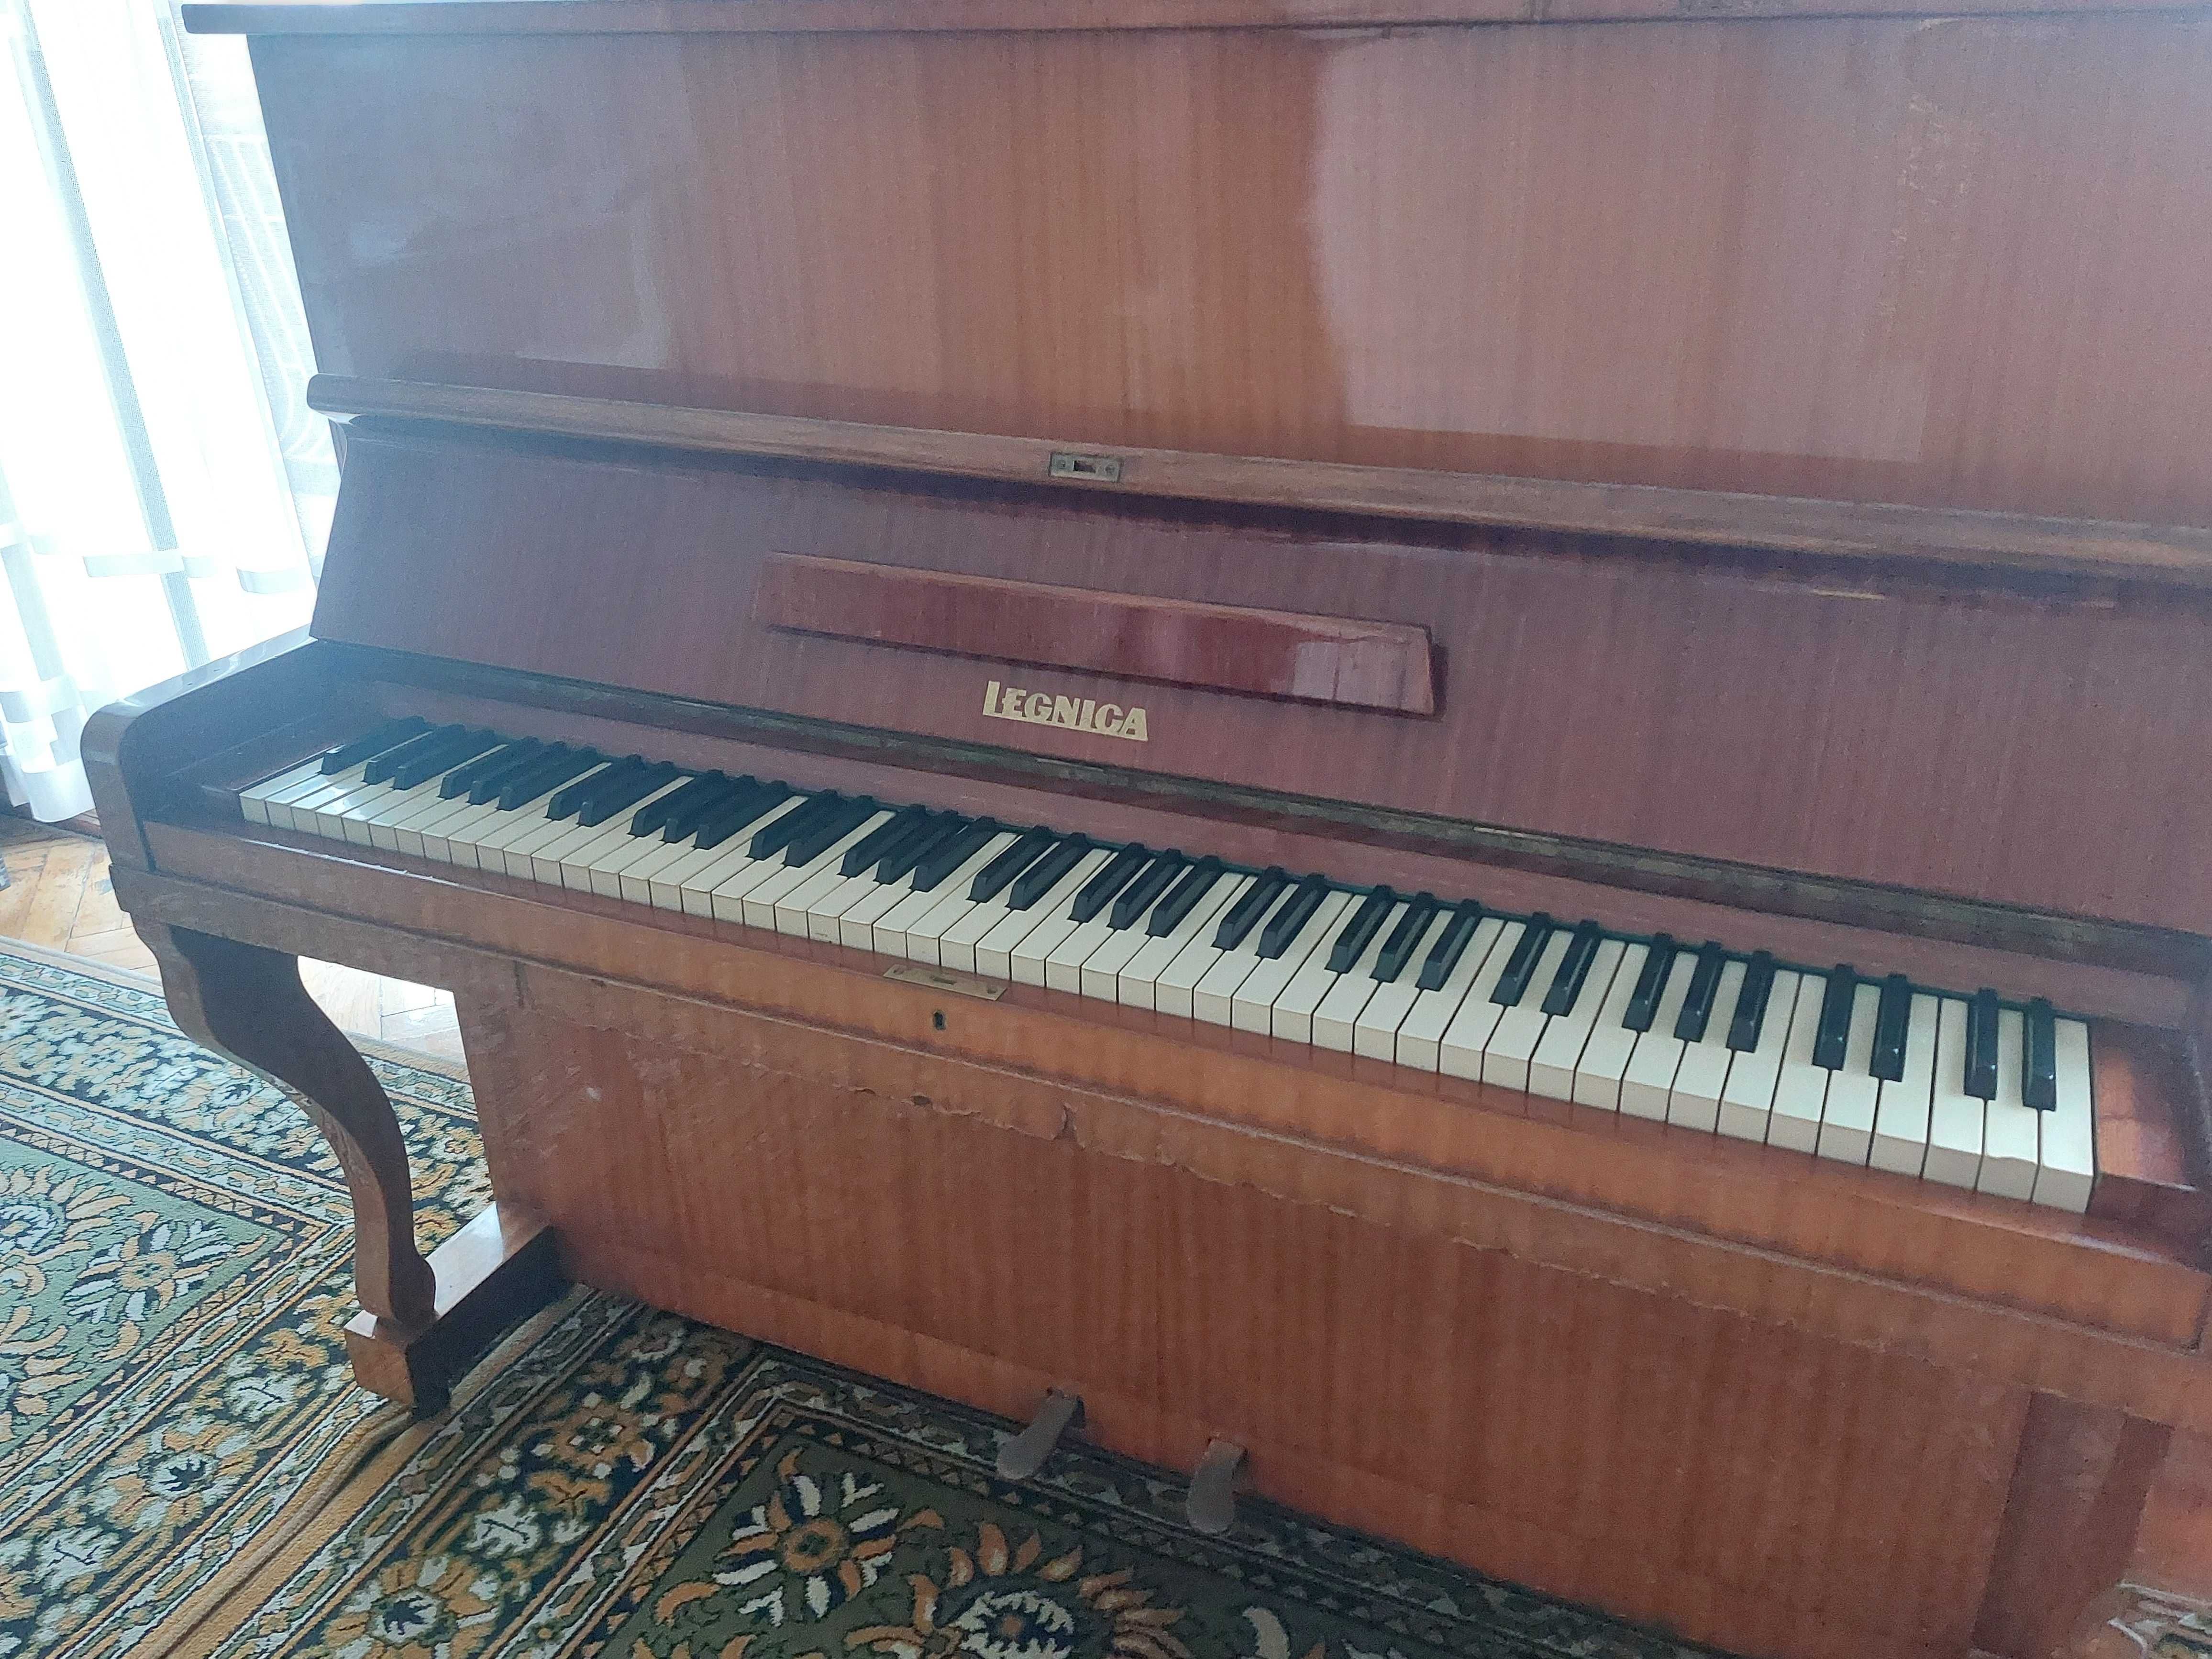 Sprzedam pianino Legnica z lat 80tych